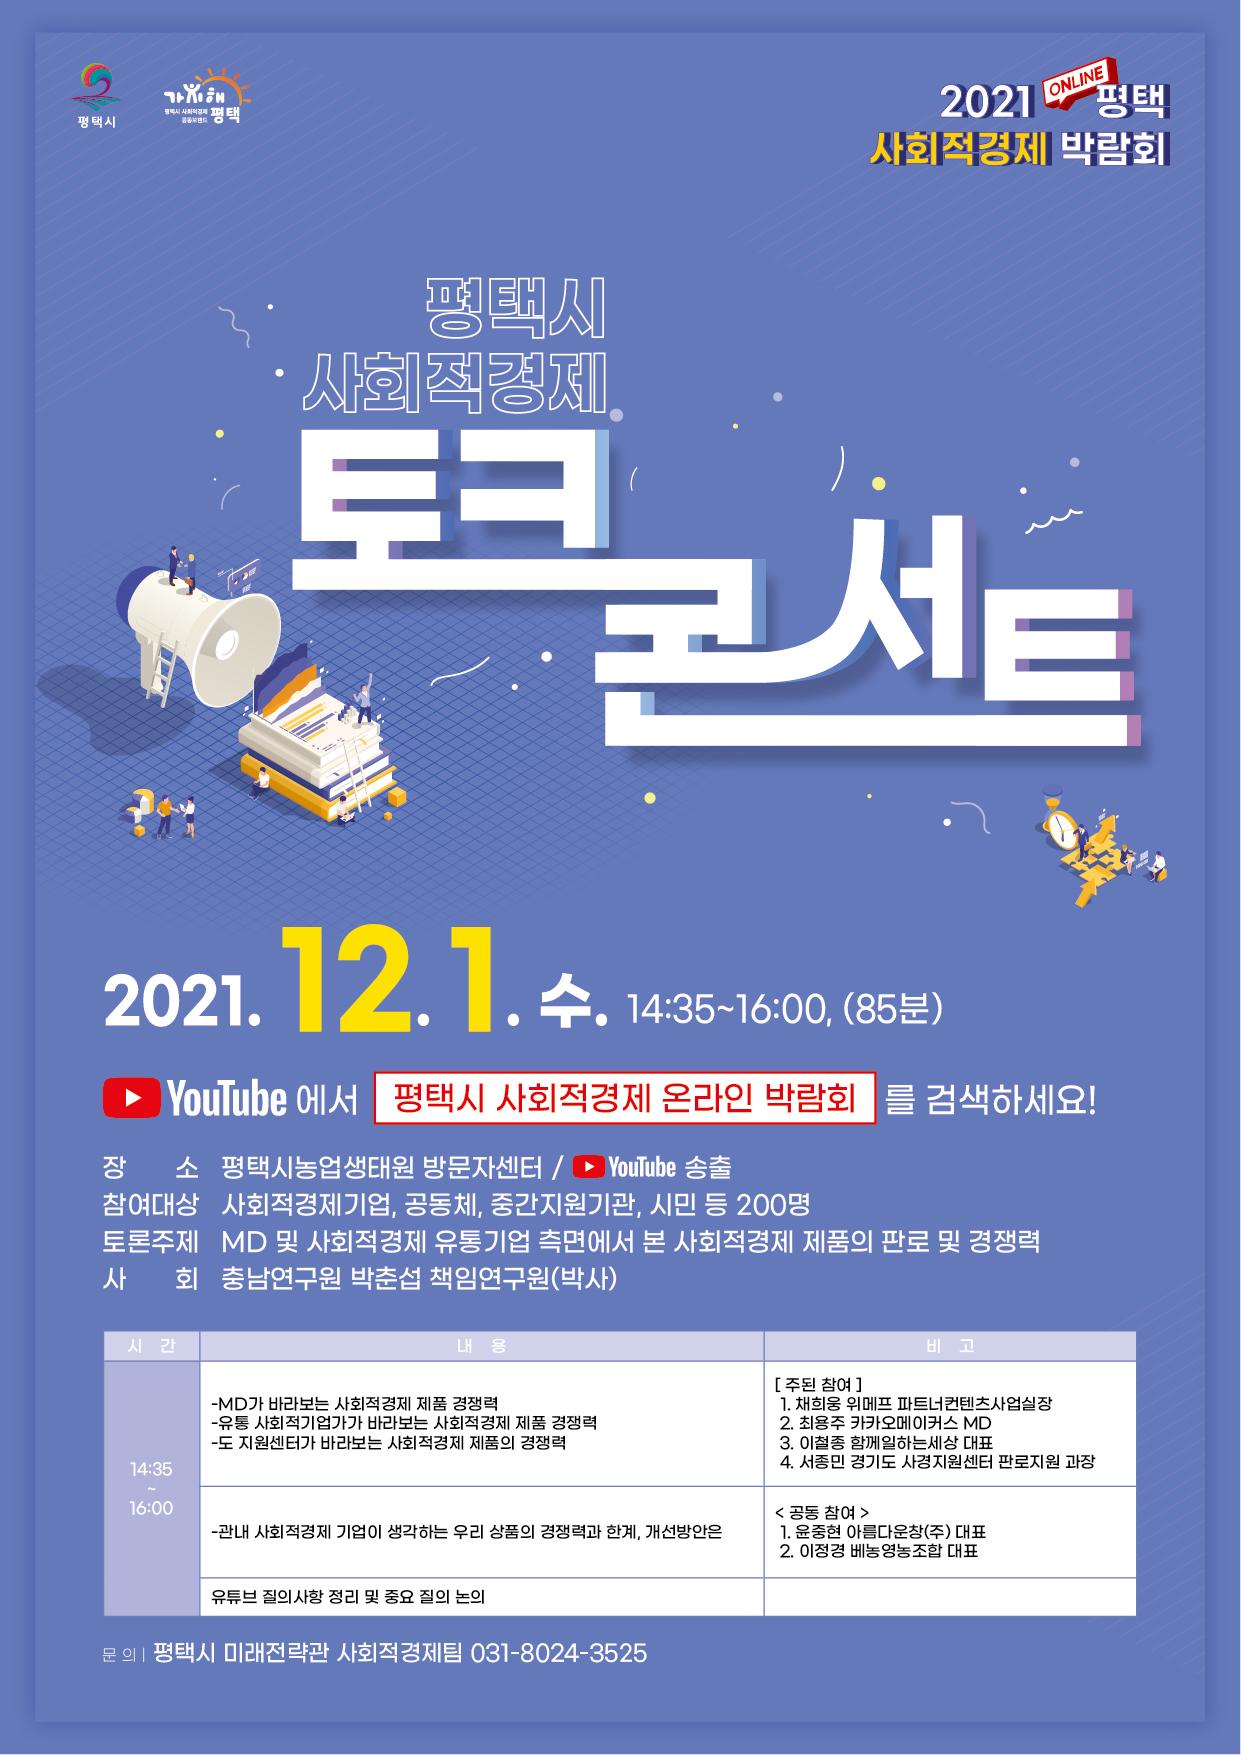 21년 사회적경제 온라인 박람회 토크콘서트 개최